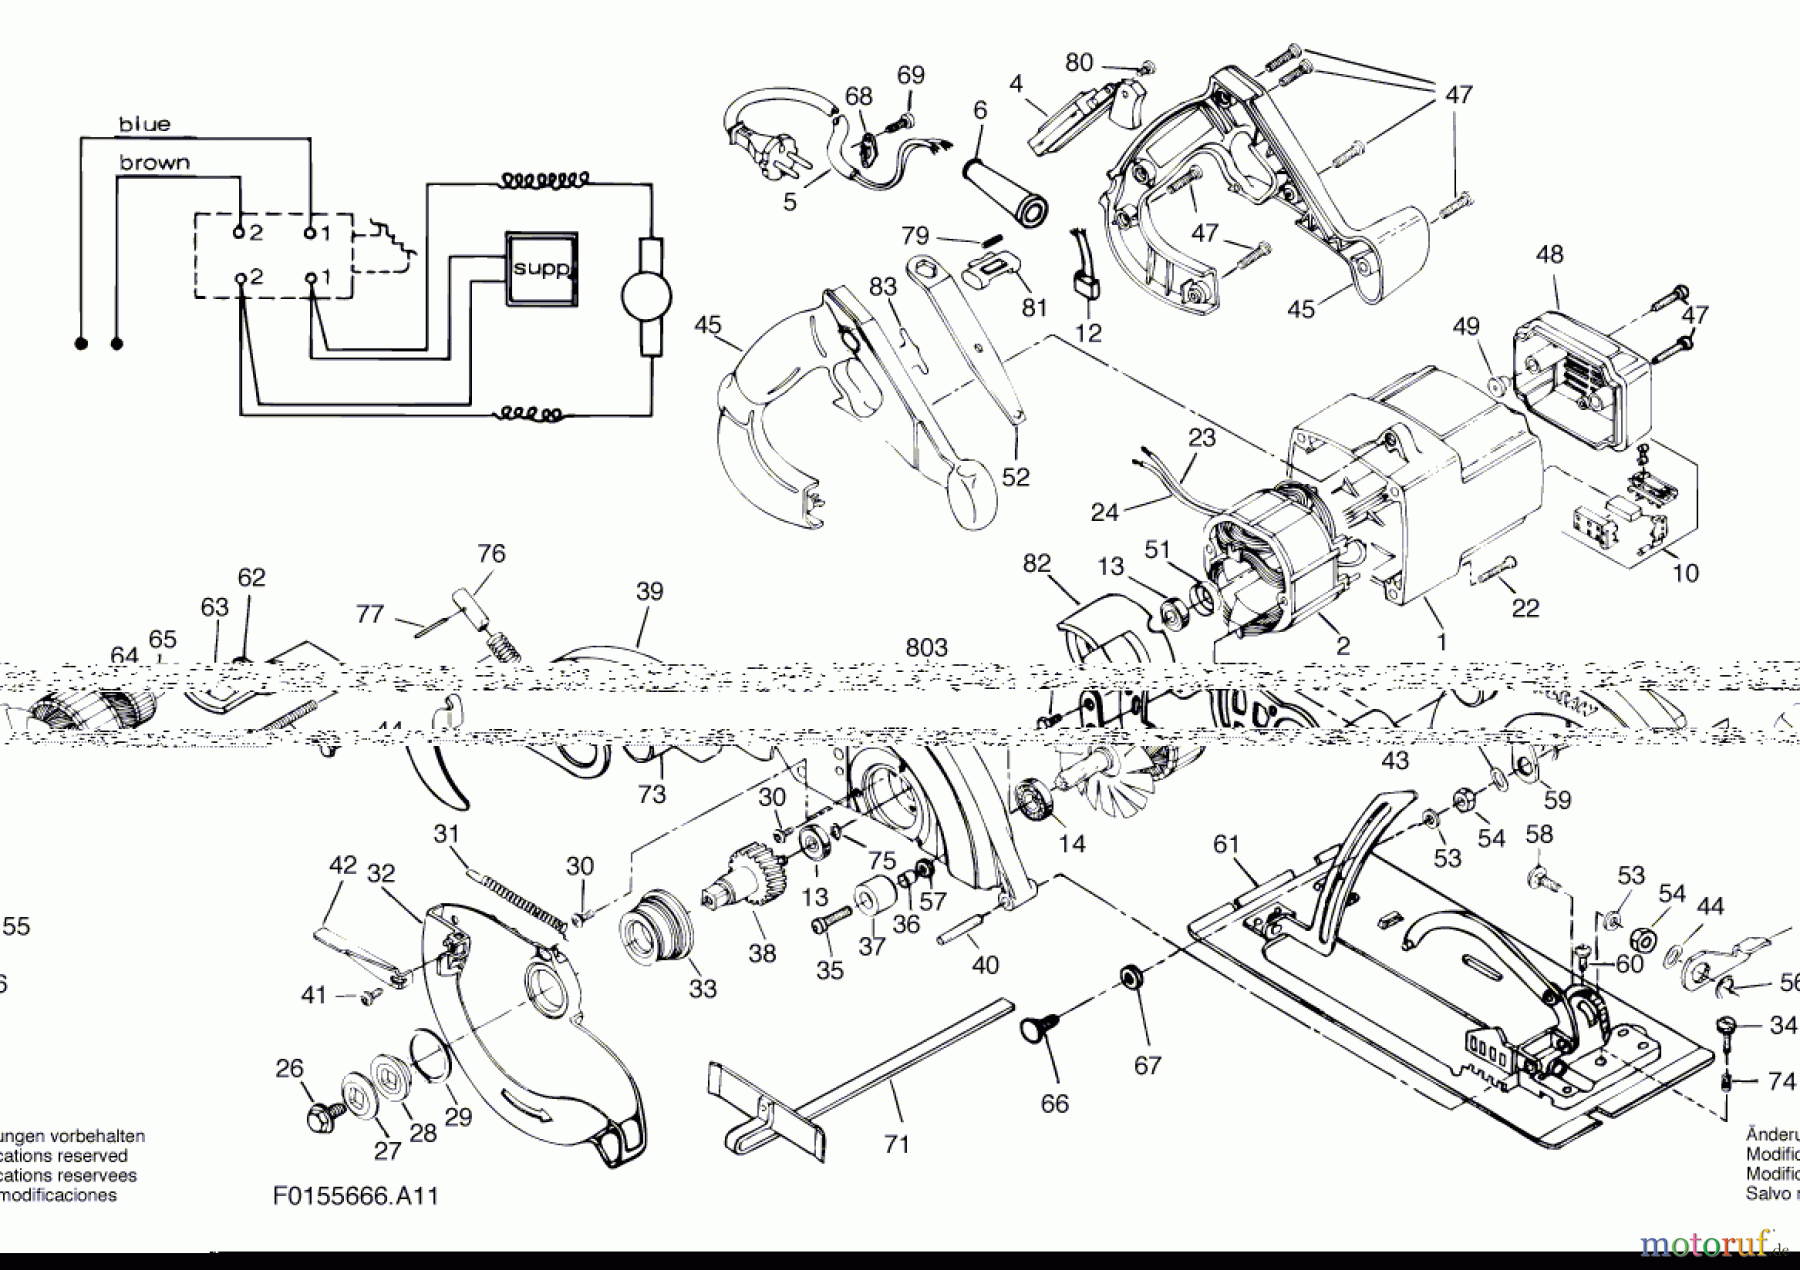  Bosch Werkzeug Kreissäge 5666 U1 Seite 1